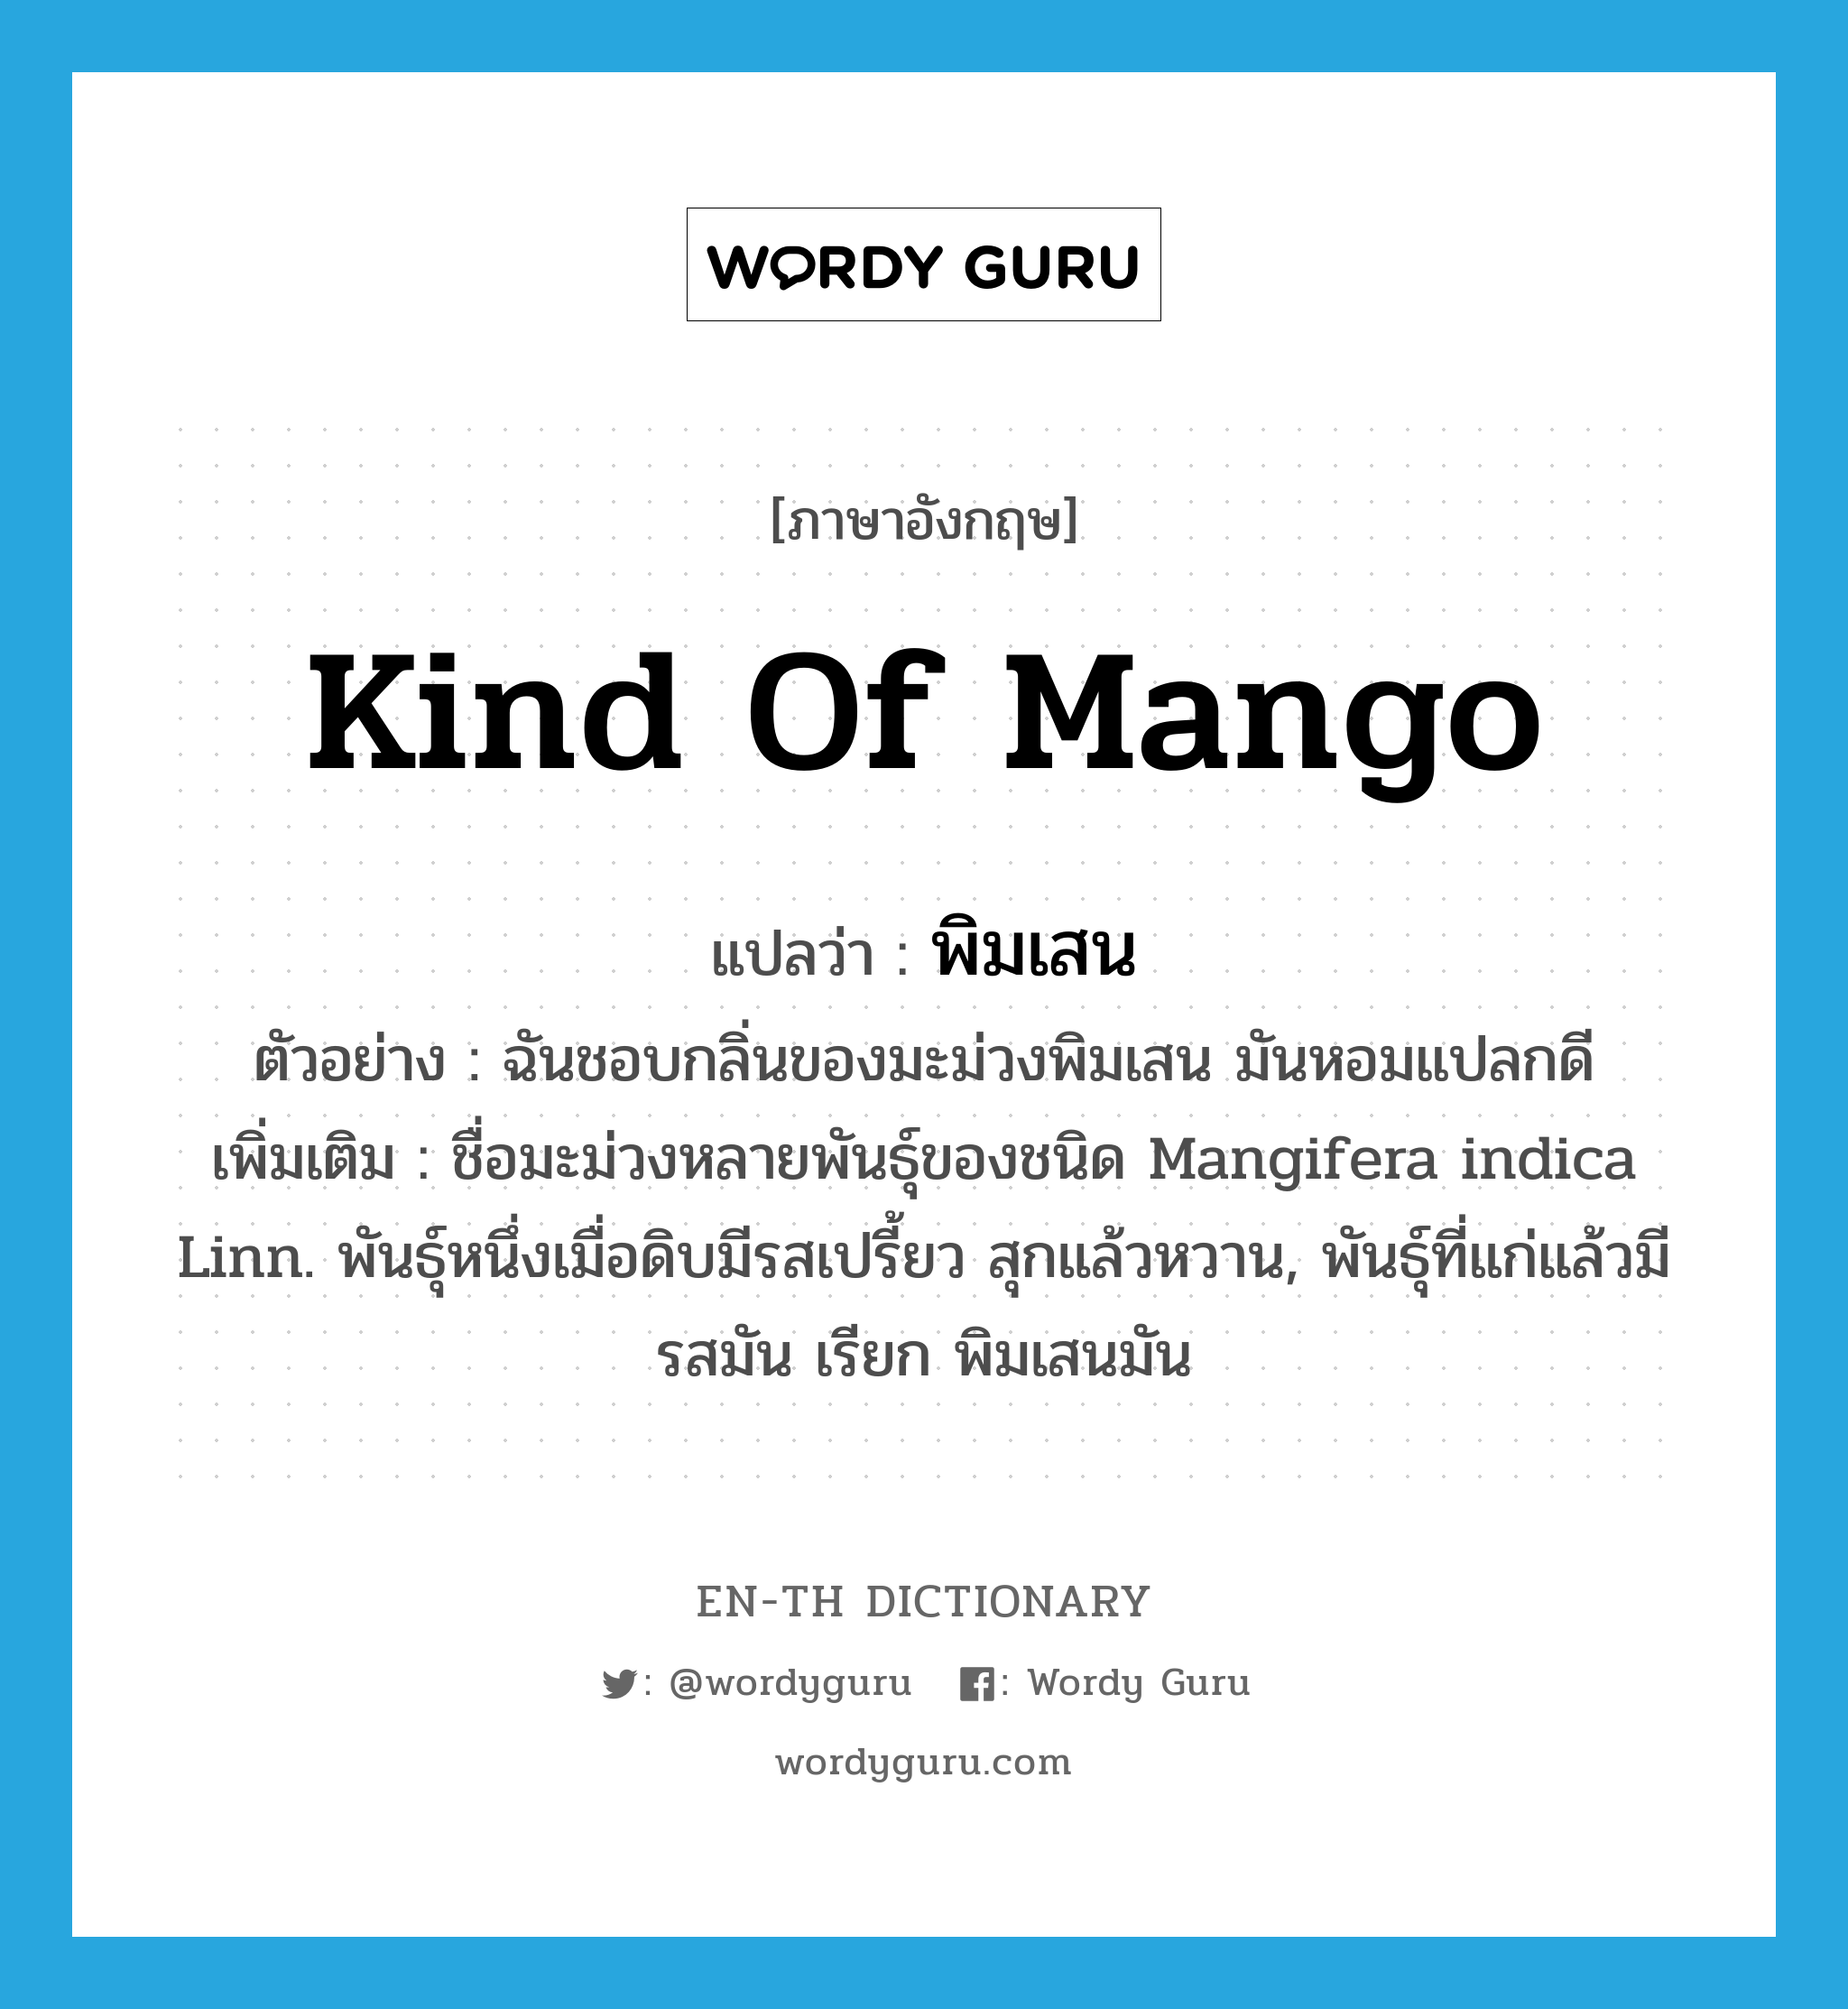 พิมเสน ภาษาอังกฤษ?, คำศัพท์ภาษาอังกฤษ พิมเสน แปลว่า kind of mango ประเภท N ตัวอย่าง ฉันชอบกลิ่นของมะม่วงพิมเสน มันหอมแปลกดี เพิ่มเติม ชื่อมะม่วงหลายพันธุ์ของชนิด Mangifera indica Linn. พันธุ์หนึ่งเมื่อดิบมีรสเปรี้ยว สุกแล้วหวาน, พันธุ์ที่แก่แล้วมีรสมัน เรียก พิมเสนมัน หมวด N